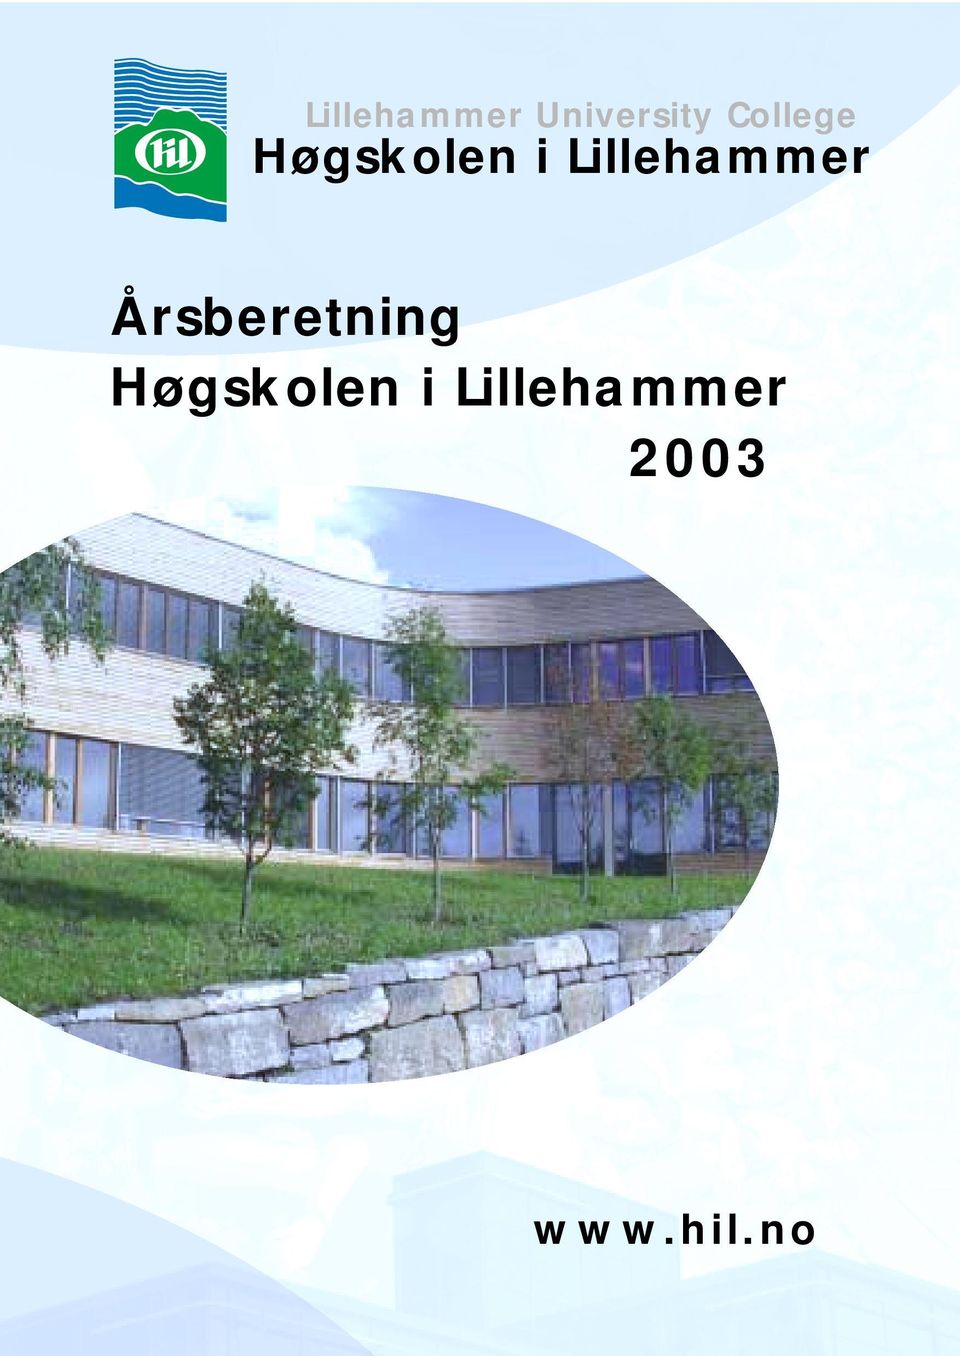 Lillehammer Årsberetning